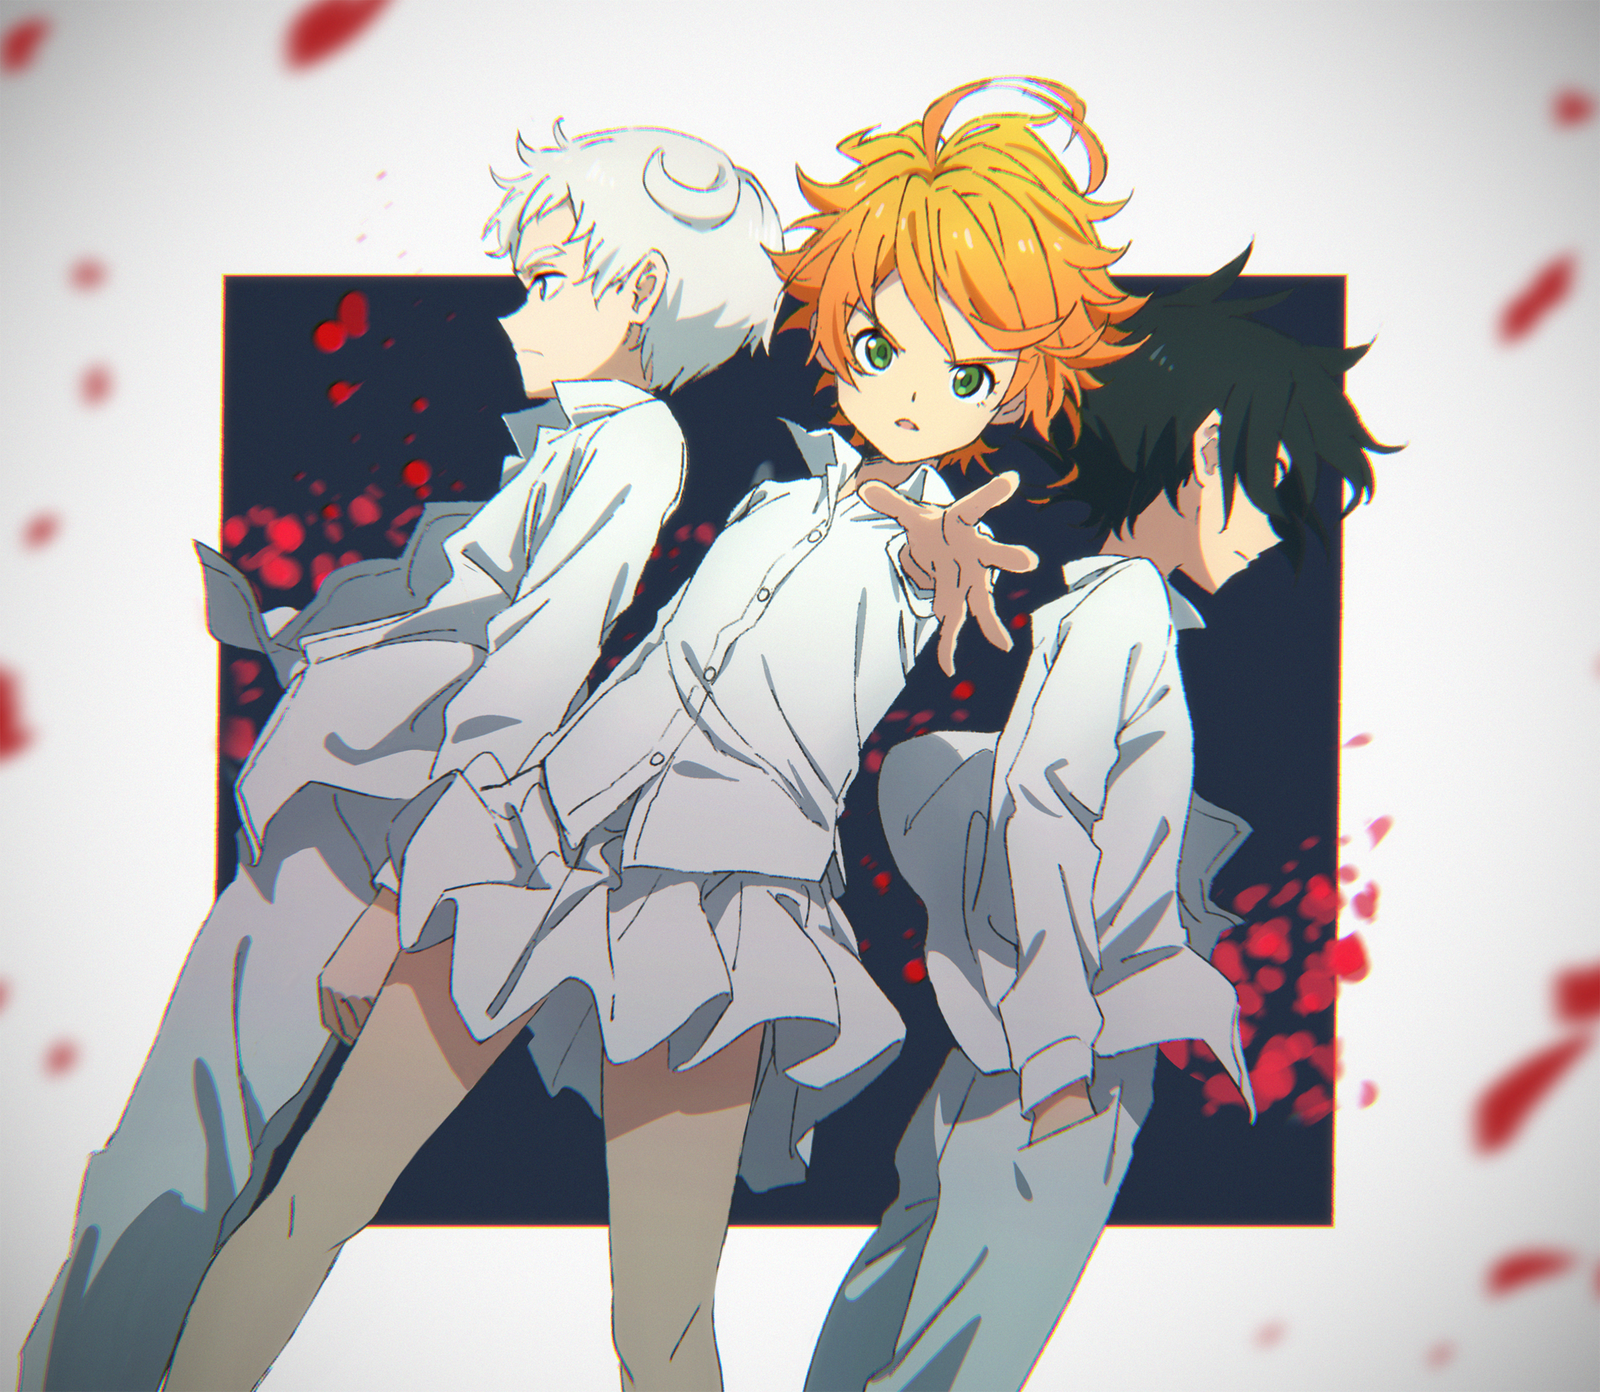 Anime Art Trio - Anime, Anime art, The promised neverland, Emma, Longpost